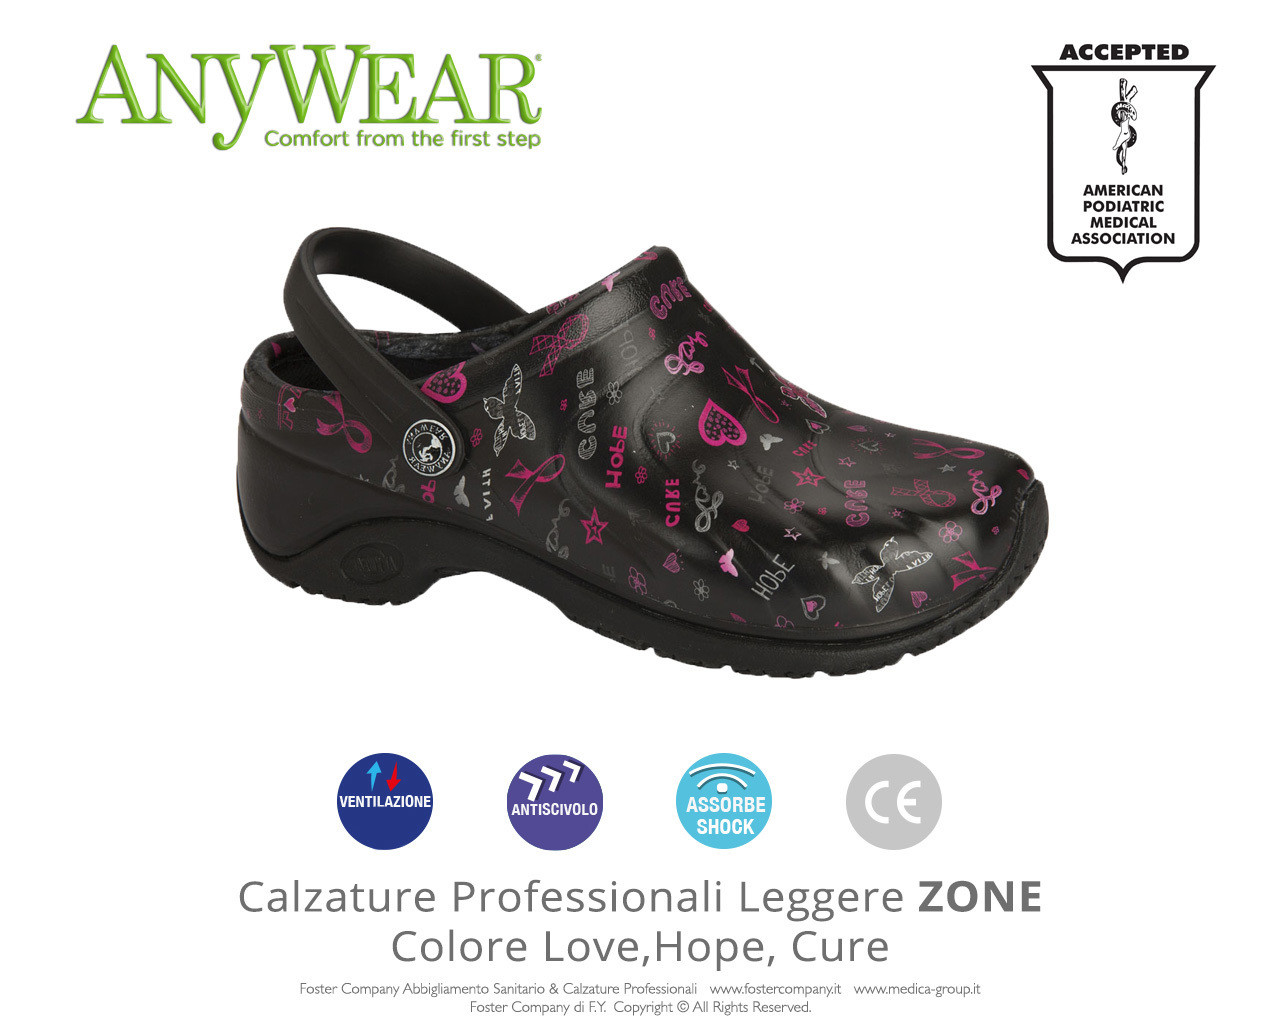 Calzature Professionali Anywear ZONE Colore Love Hope Cure - FINE SERIE